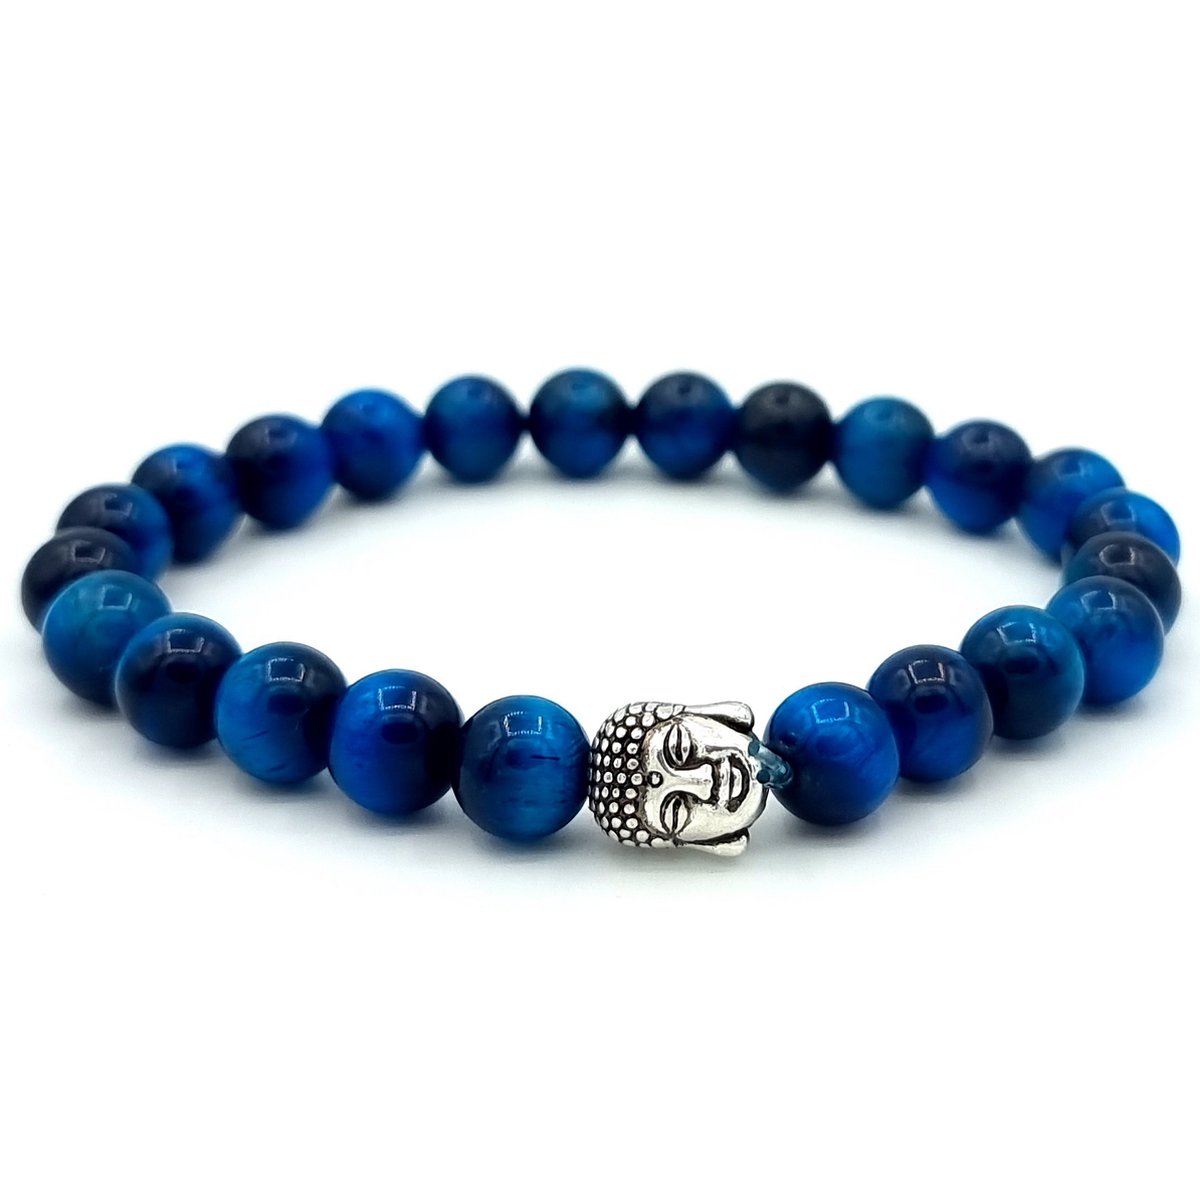 Mala armband van natuursteen – Valkenoog / Blauwe Tijgeroog steen – buddha / boedha – 20 cm - Rhylane®